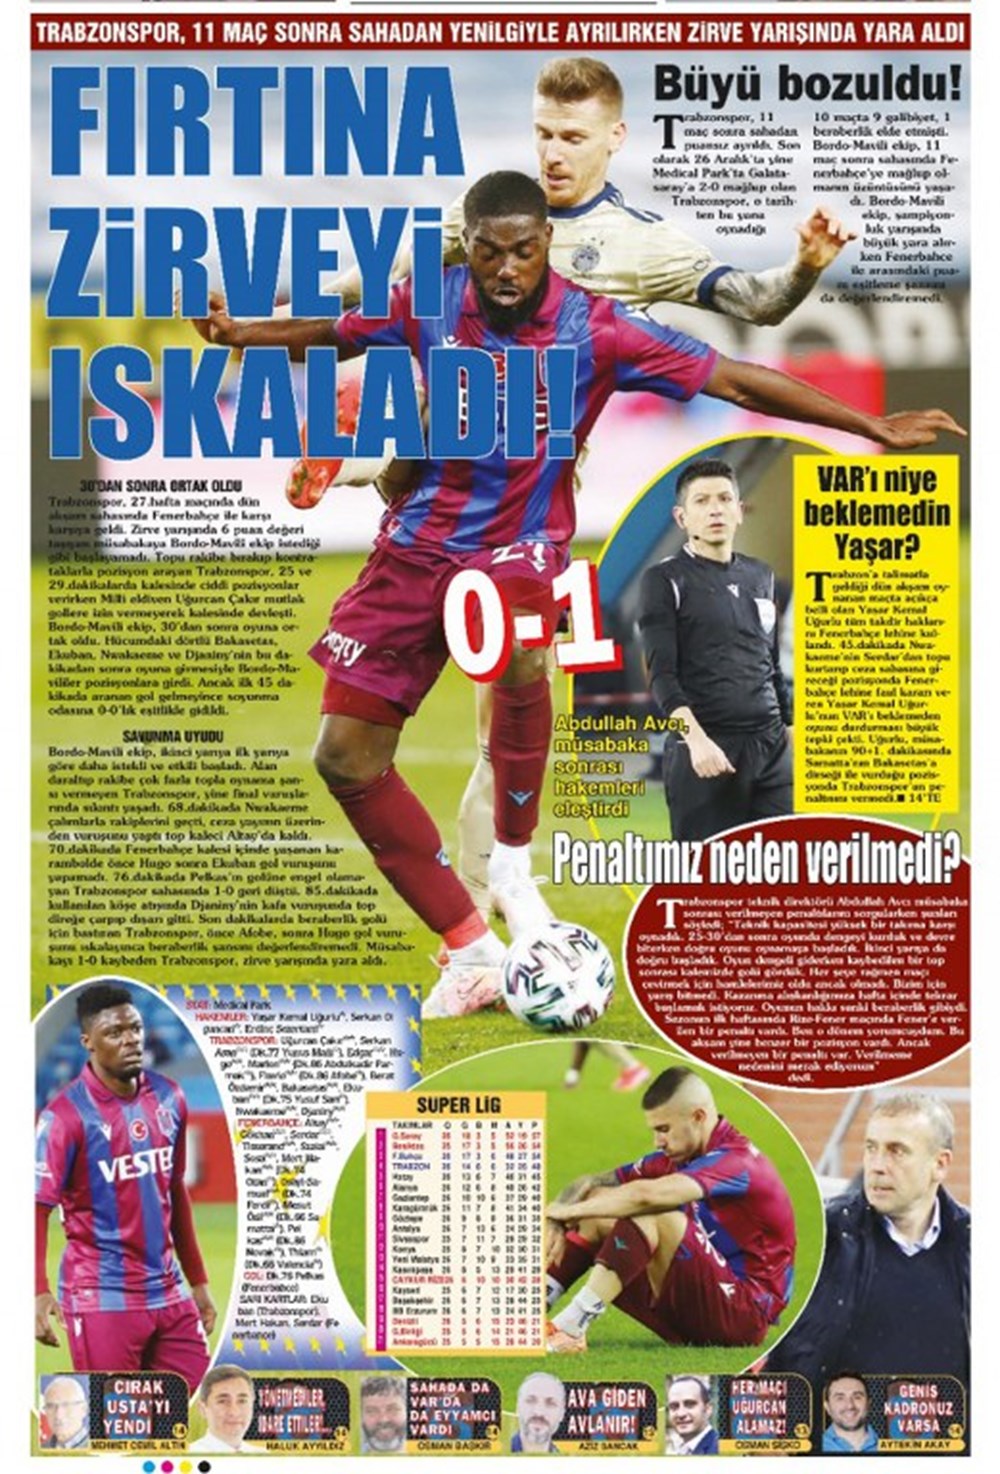  Taka Gazetesi ise “Fırtına zirveyi ıskaladı!”, “Trabzonspor, 11 maç sonra sahadan yenilgiyle ayrılırken zirve yarışında yara aldı” başlıklarını kullandı.